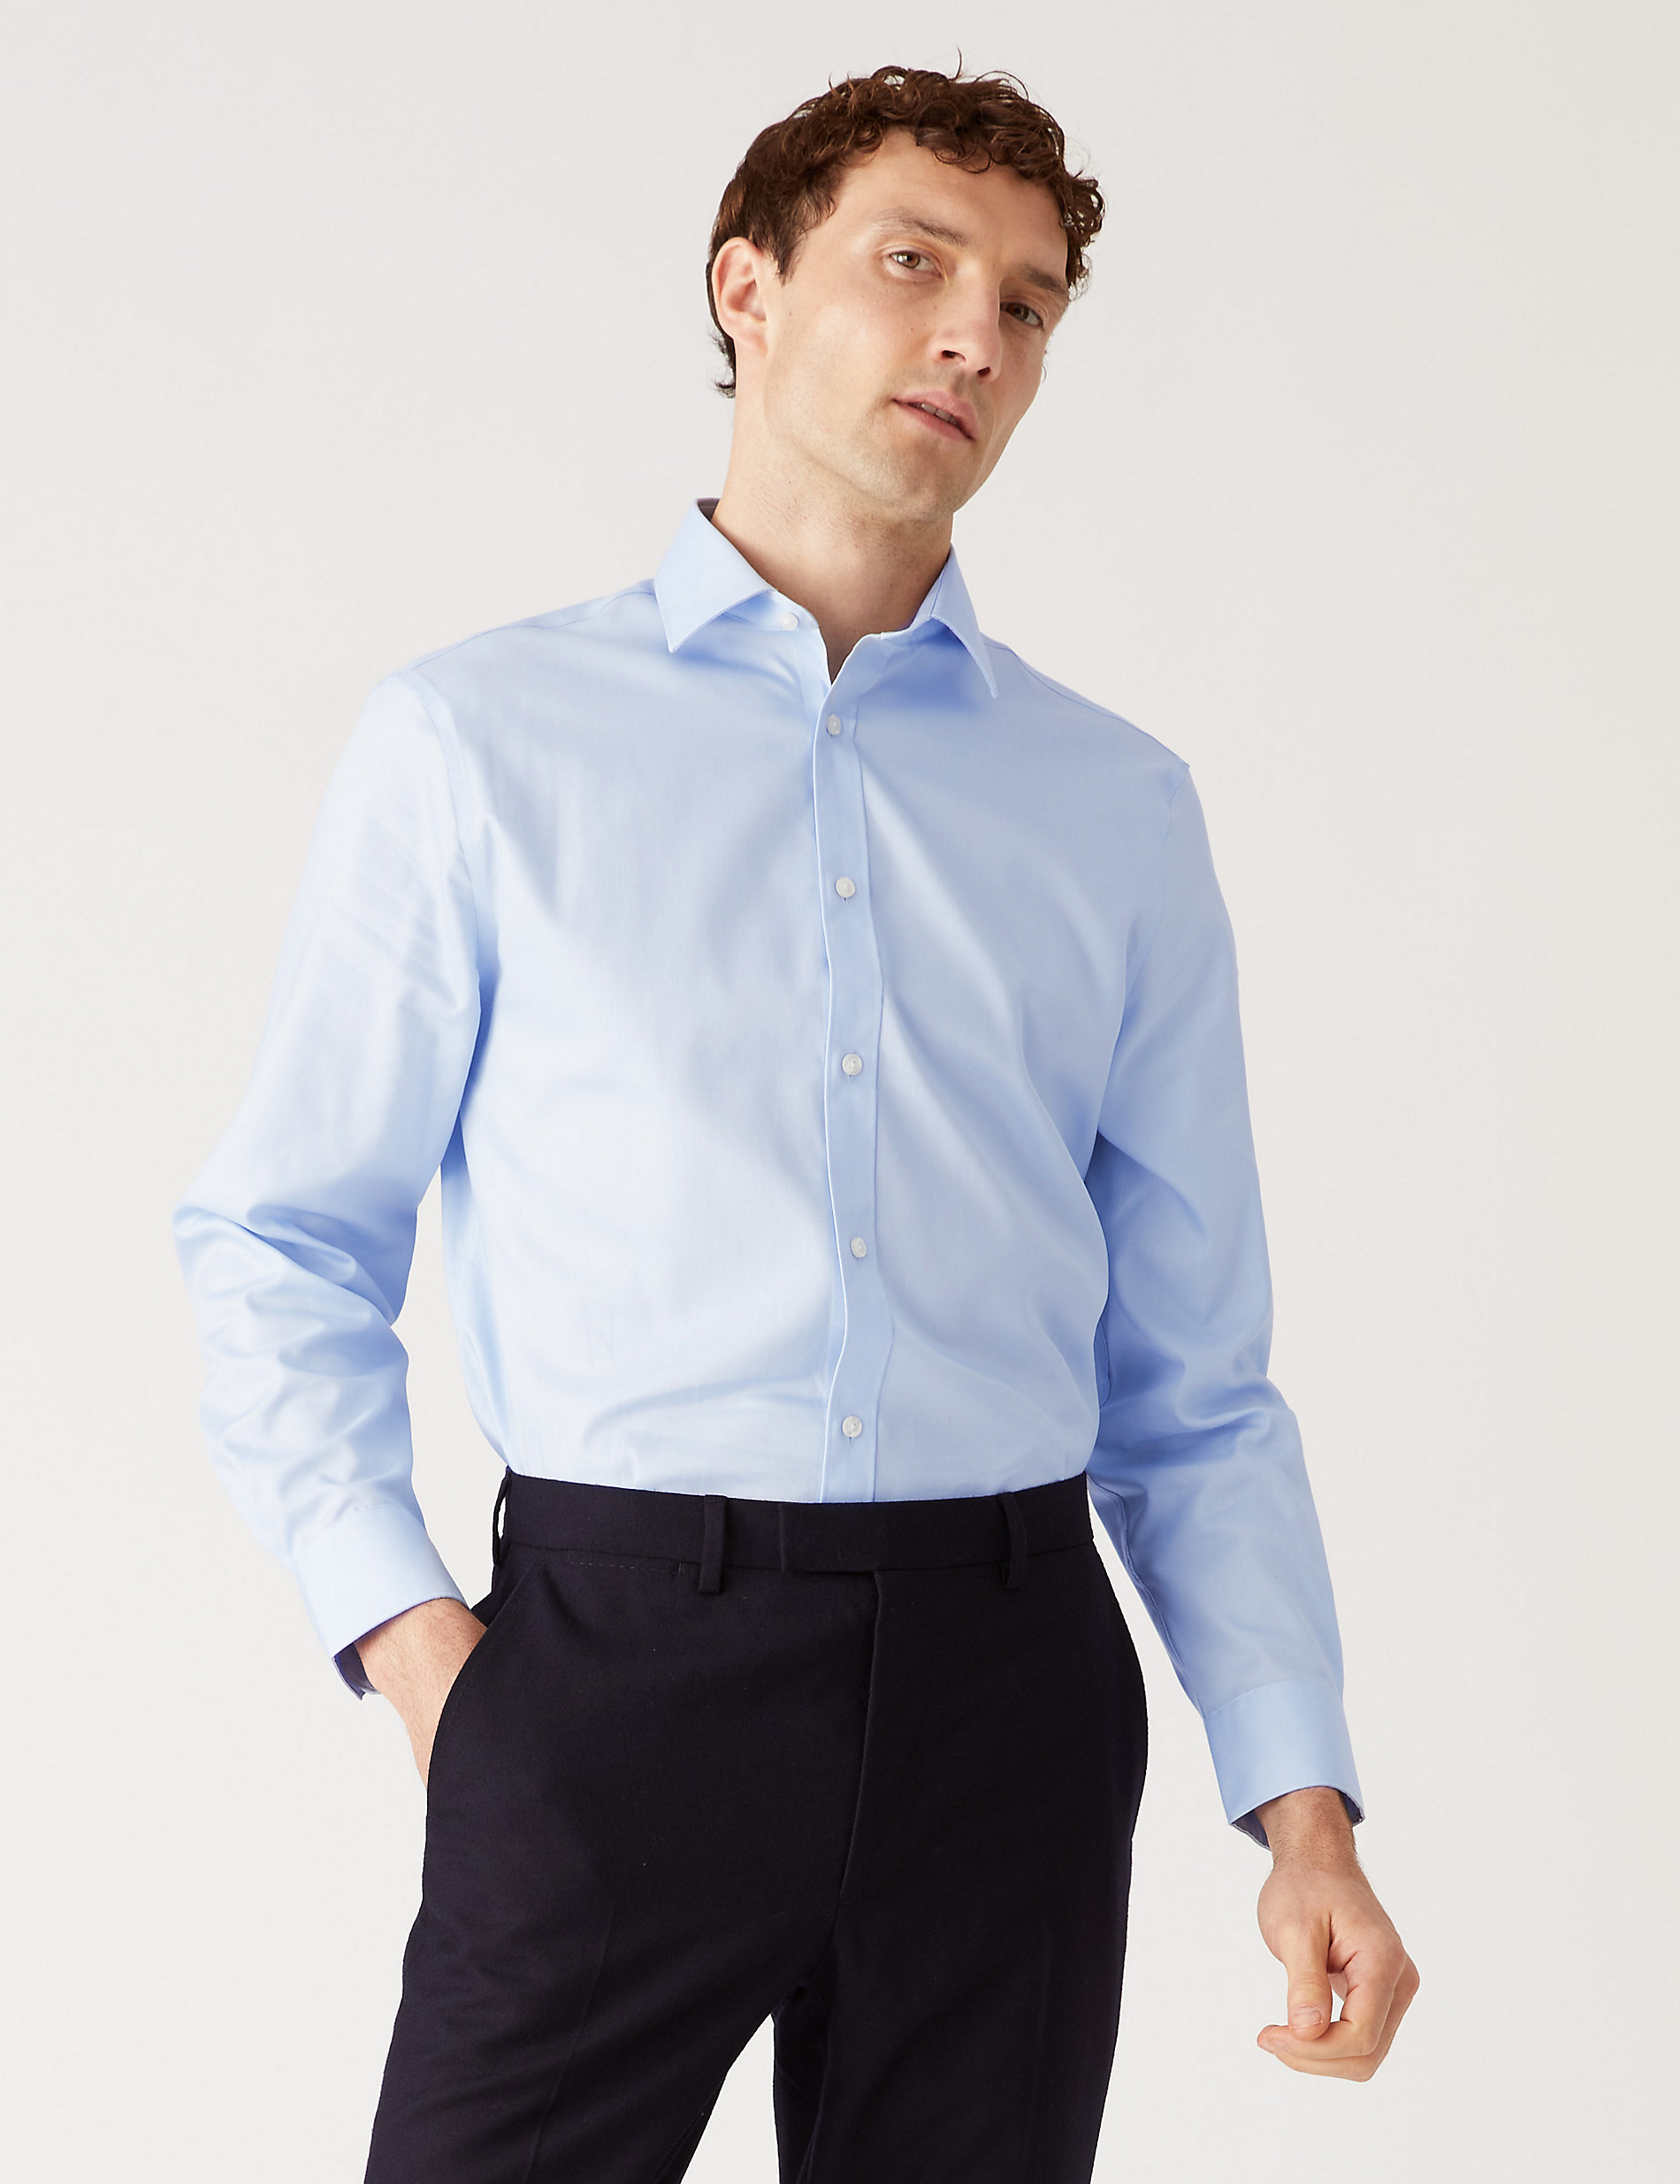 Рубашка обычного кроя из чистого хлопка без глажки Marks & Spencer luca d altieri повседневная рубашка обычного кроя из чистого фактурного хлопка голубой